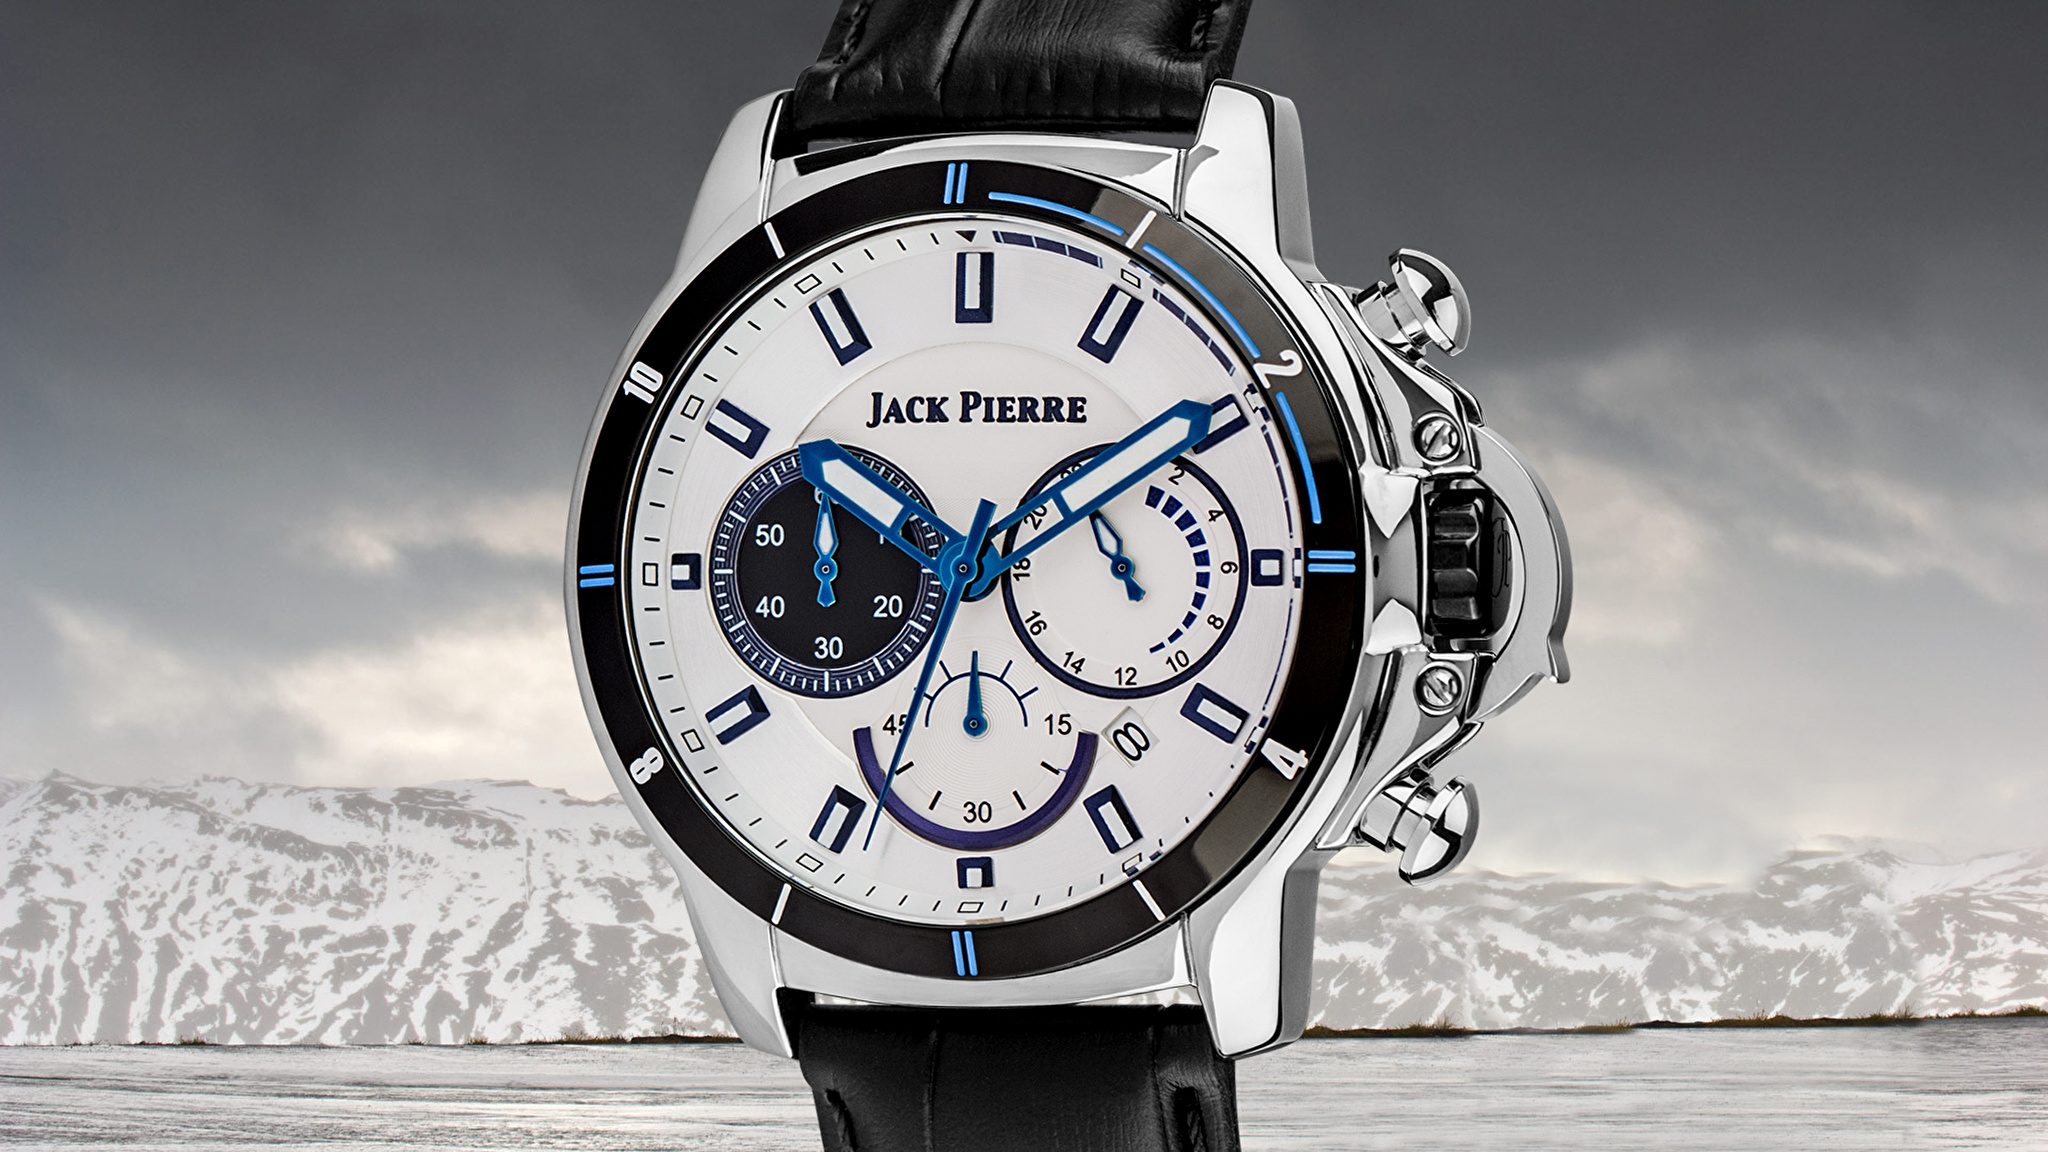 Логотипы наручных часов. Jack Pierre. Jack Pierre часы. Швейцарские часы. Швейцарские бренды часов.